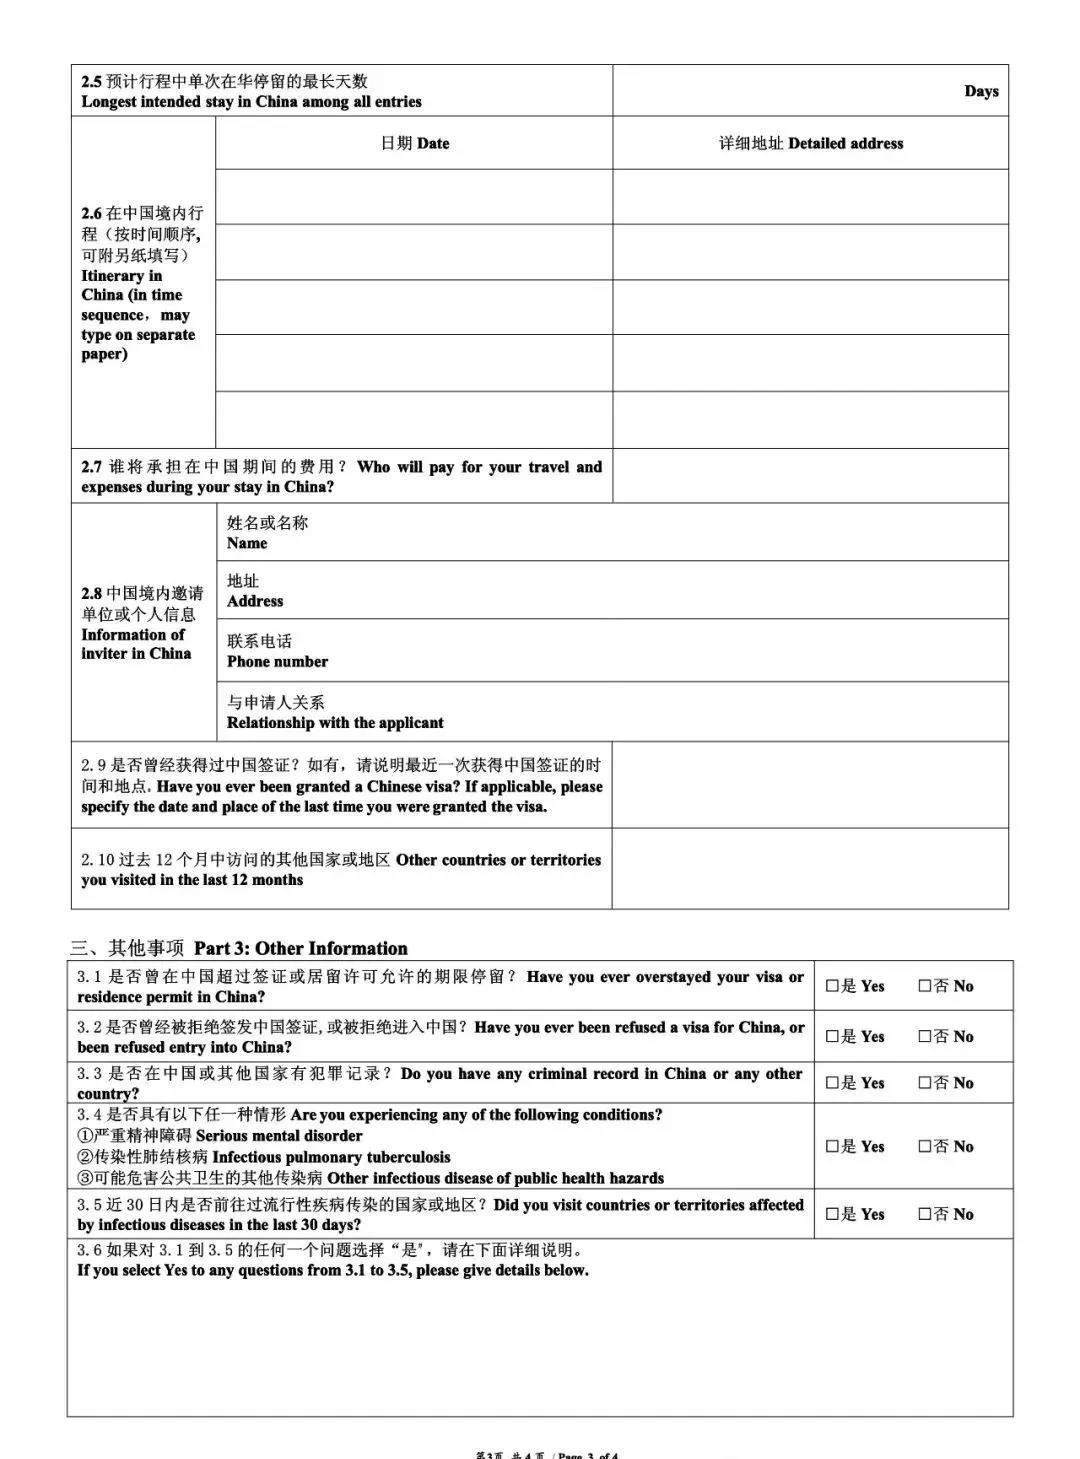 China Visa application Form 3